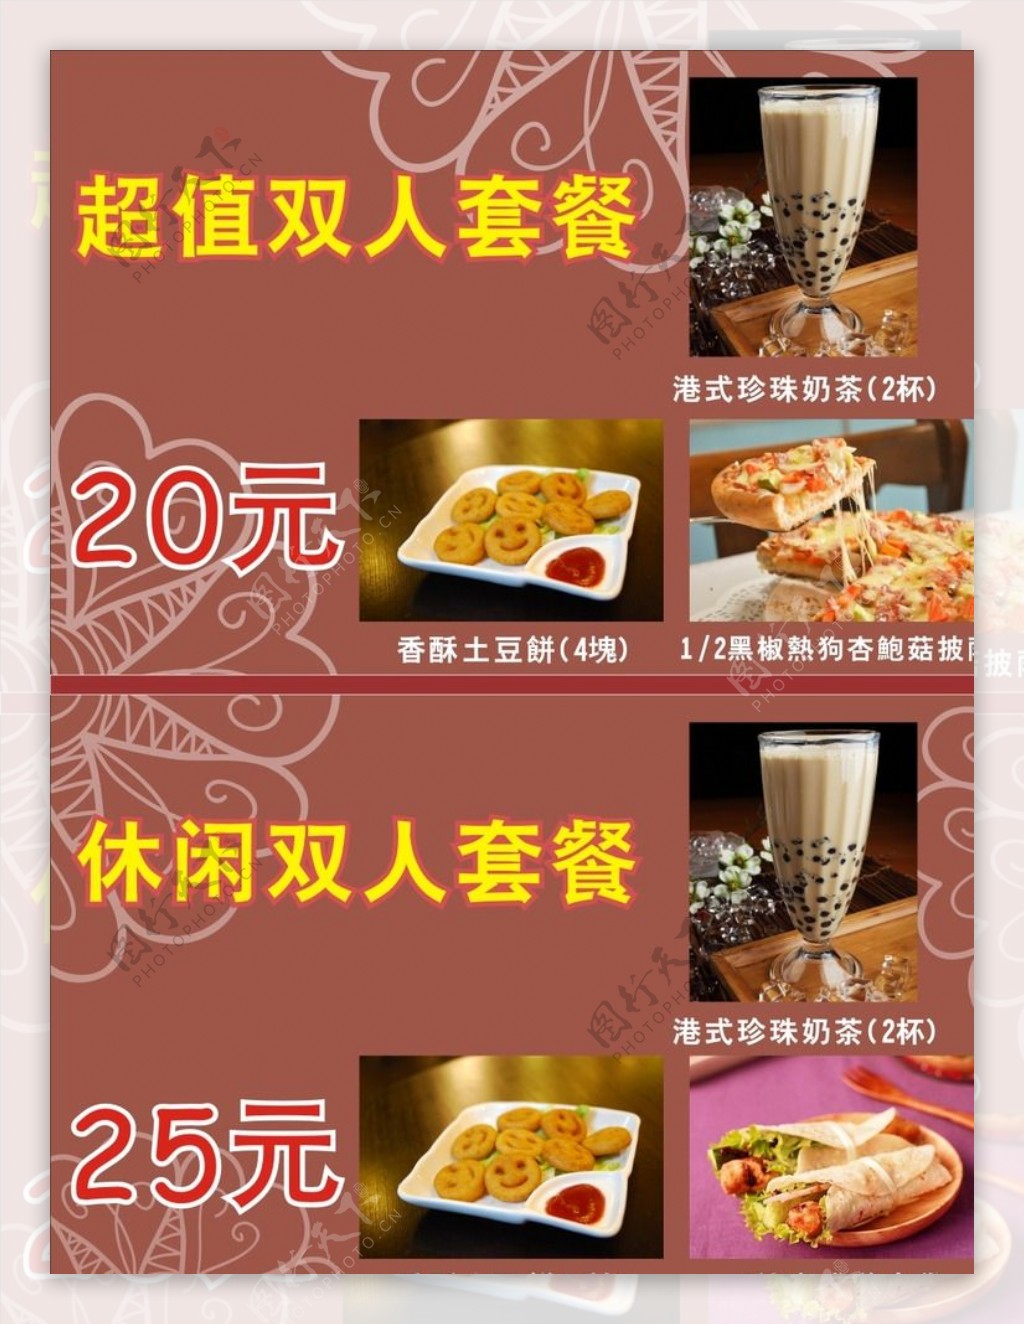 奶茶海报套餐广告图片